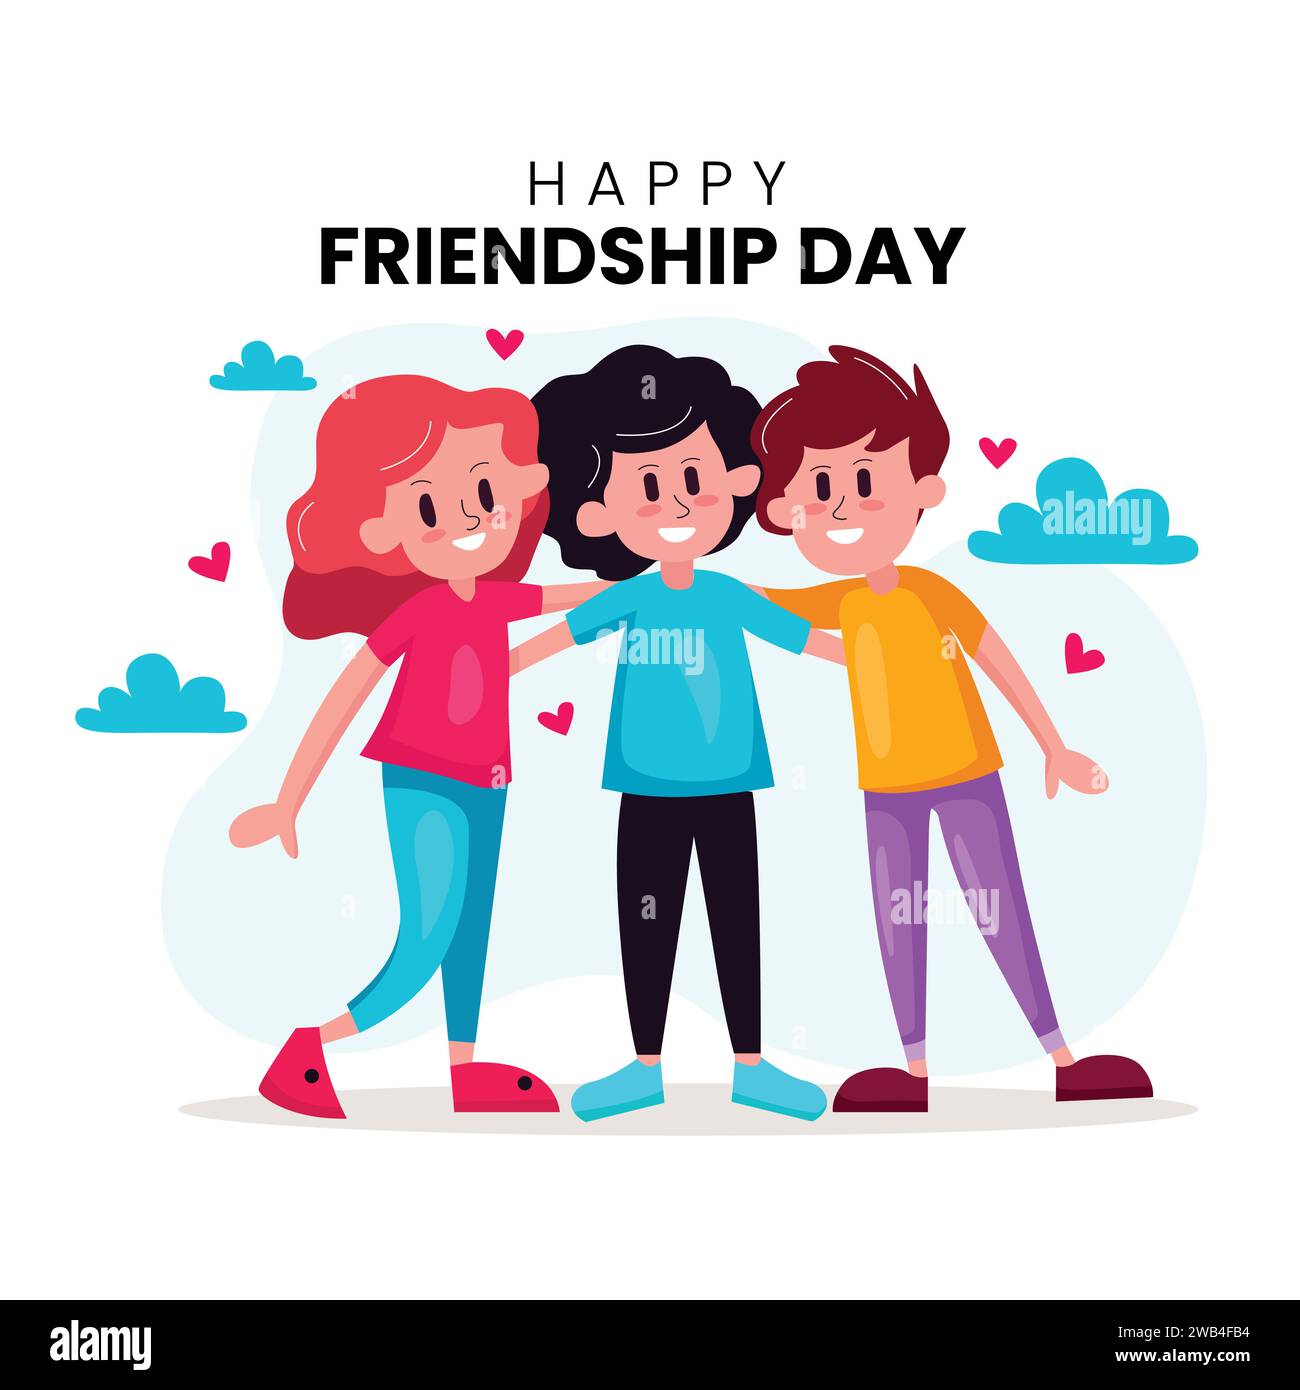 Happy Friendship Day nette Zeichentrickfigur Illustration mit jungen Jungen und Mädchen der Umarmung zusammen oder ihre Hände in flachen Stil Vektor. Stock Vektor